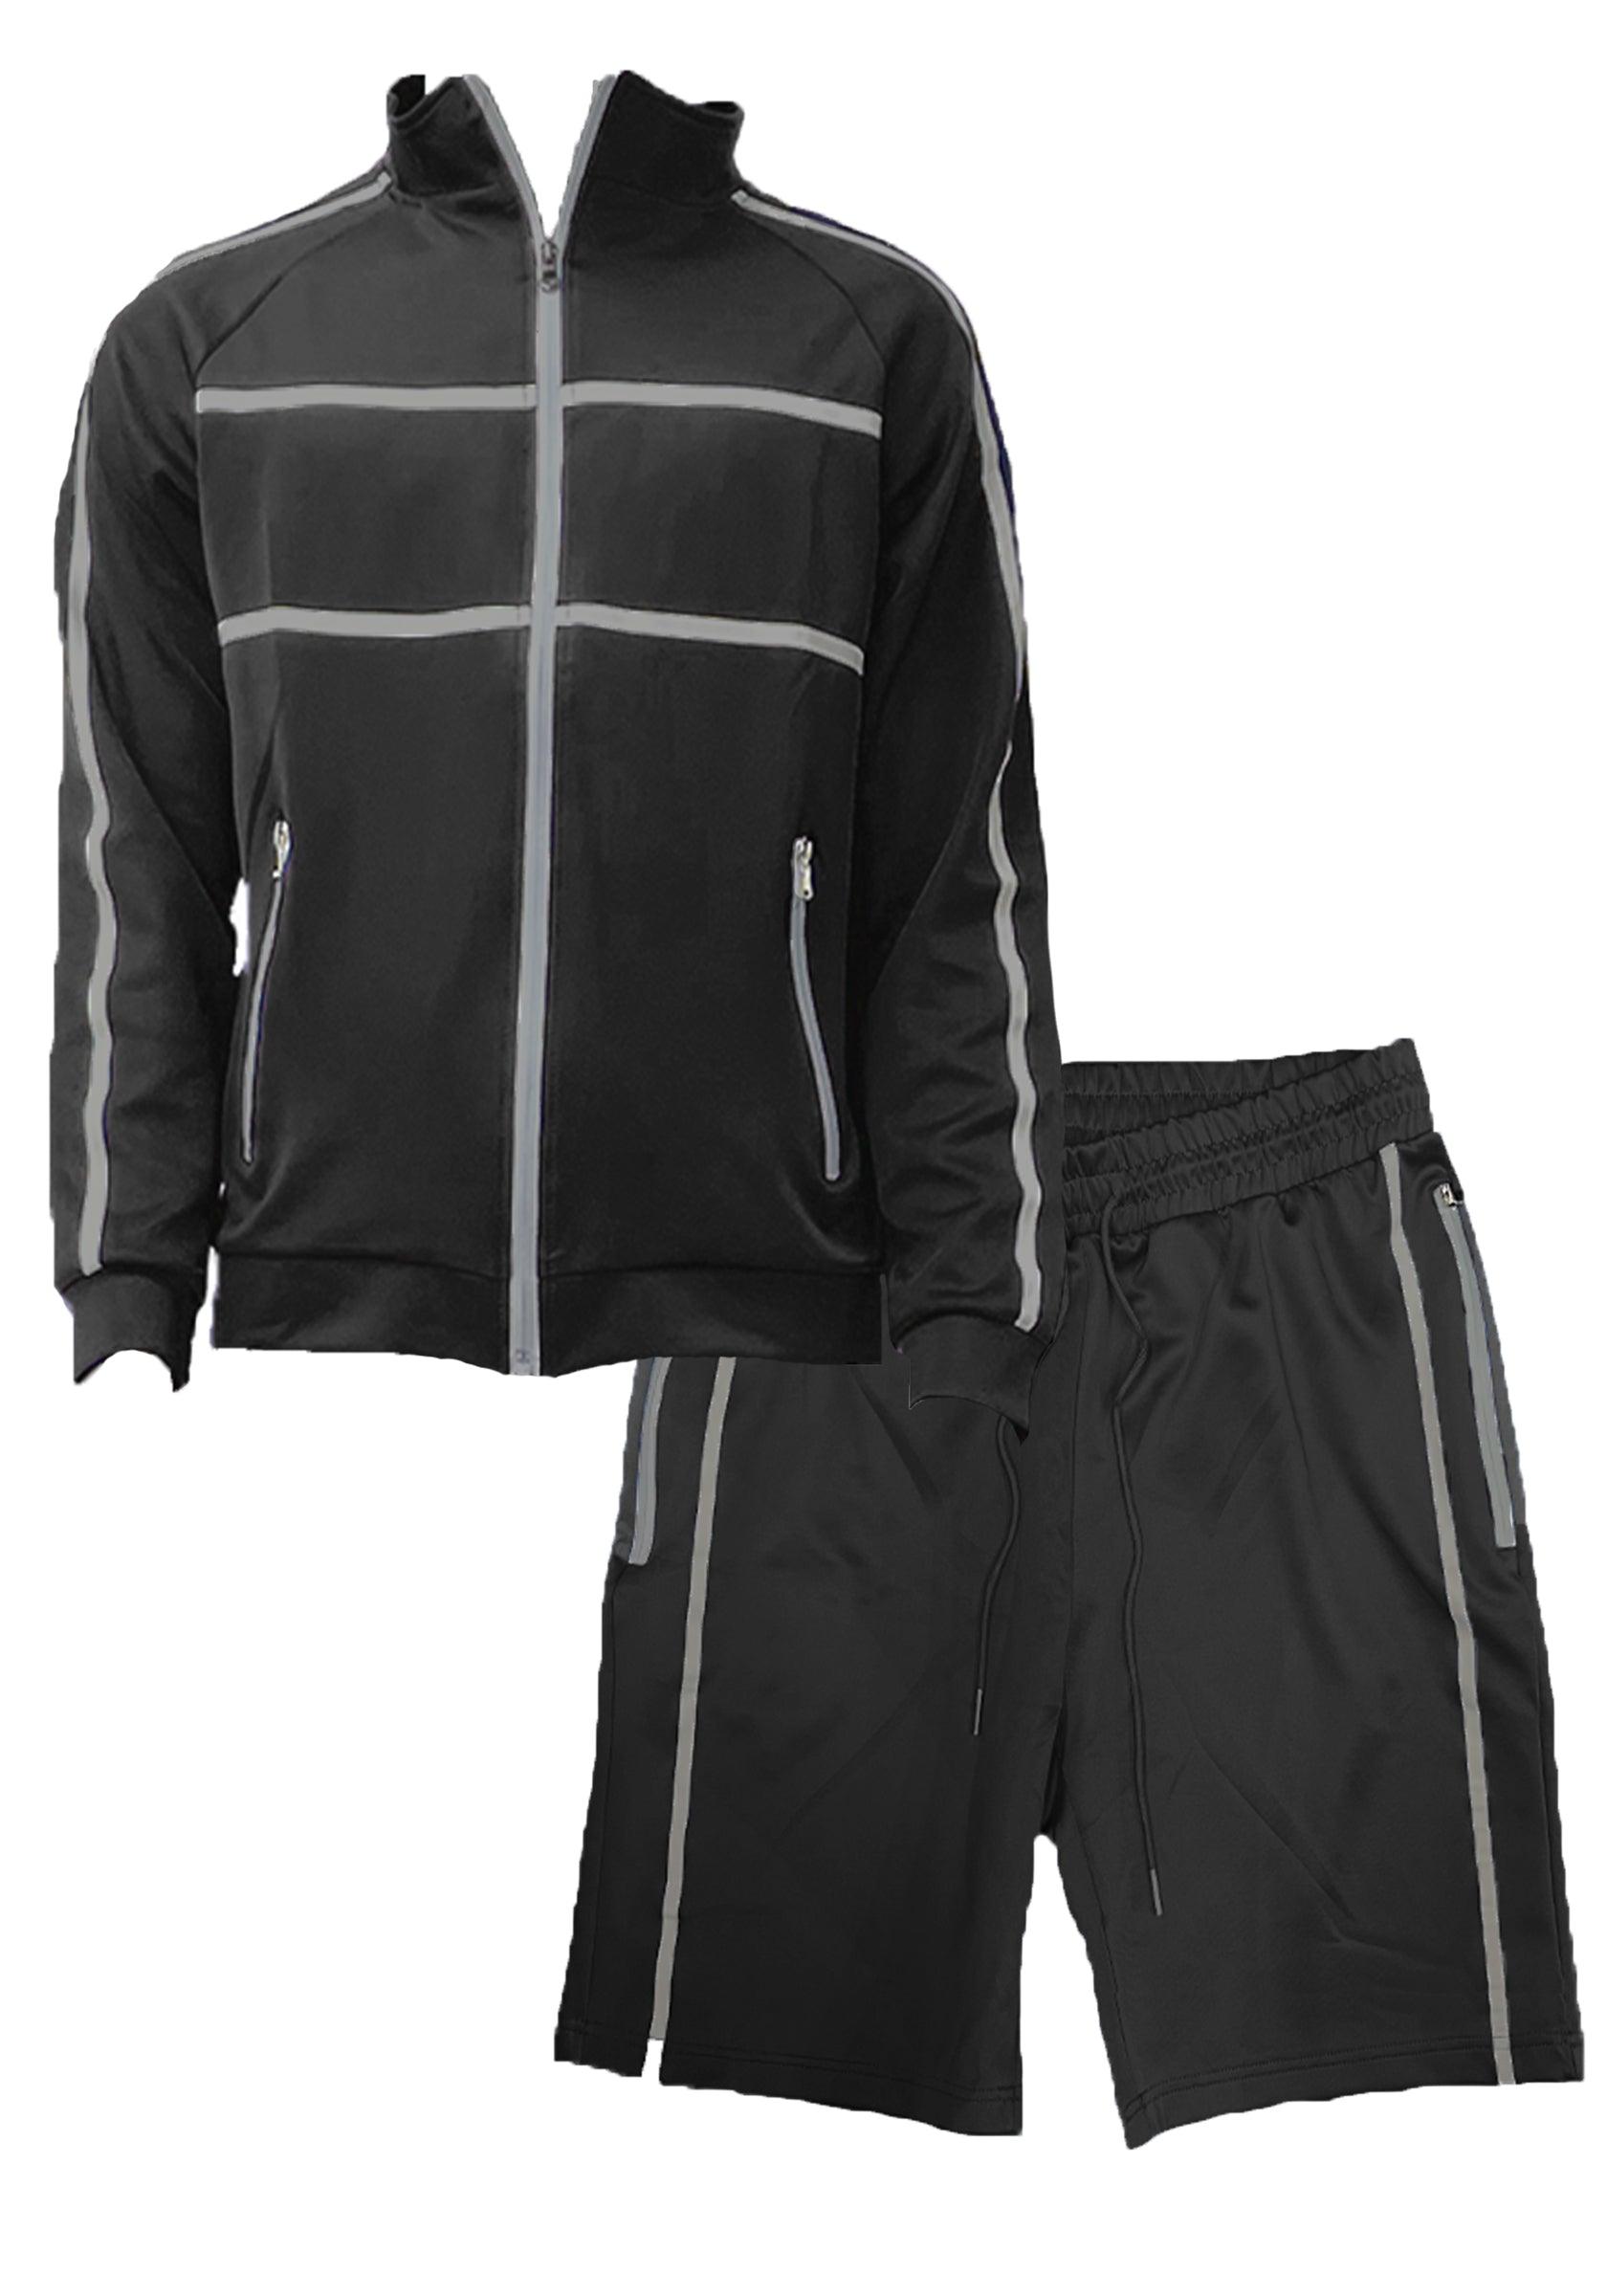 Men's 2PC Track Sets Black Jordan Track Jacket Short Set